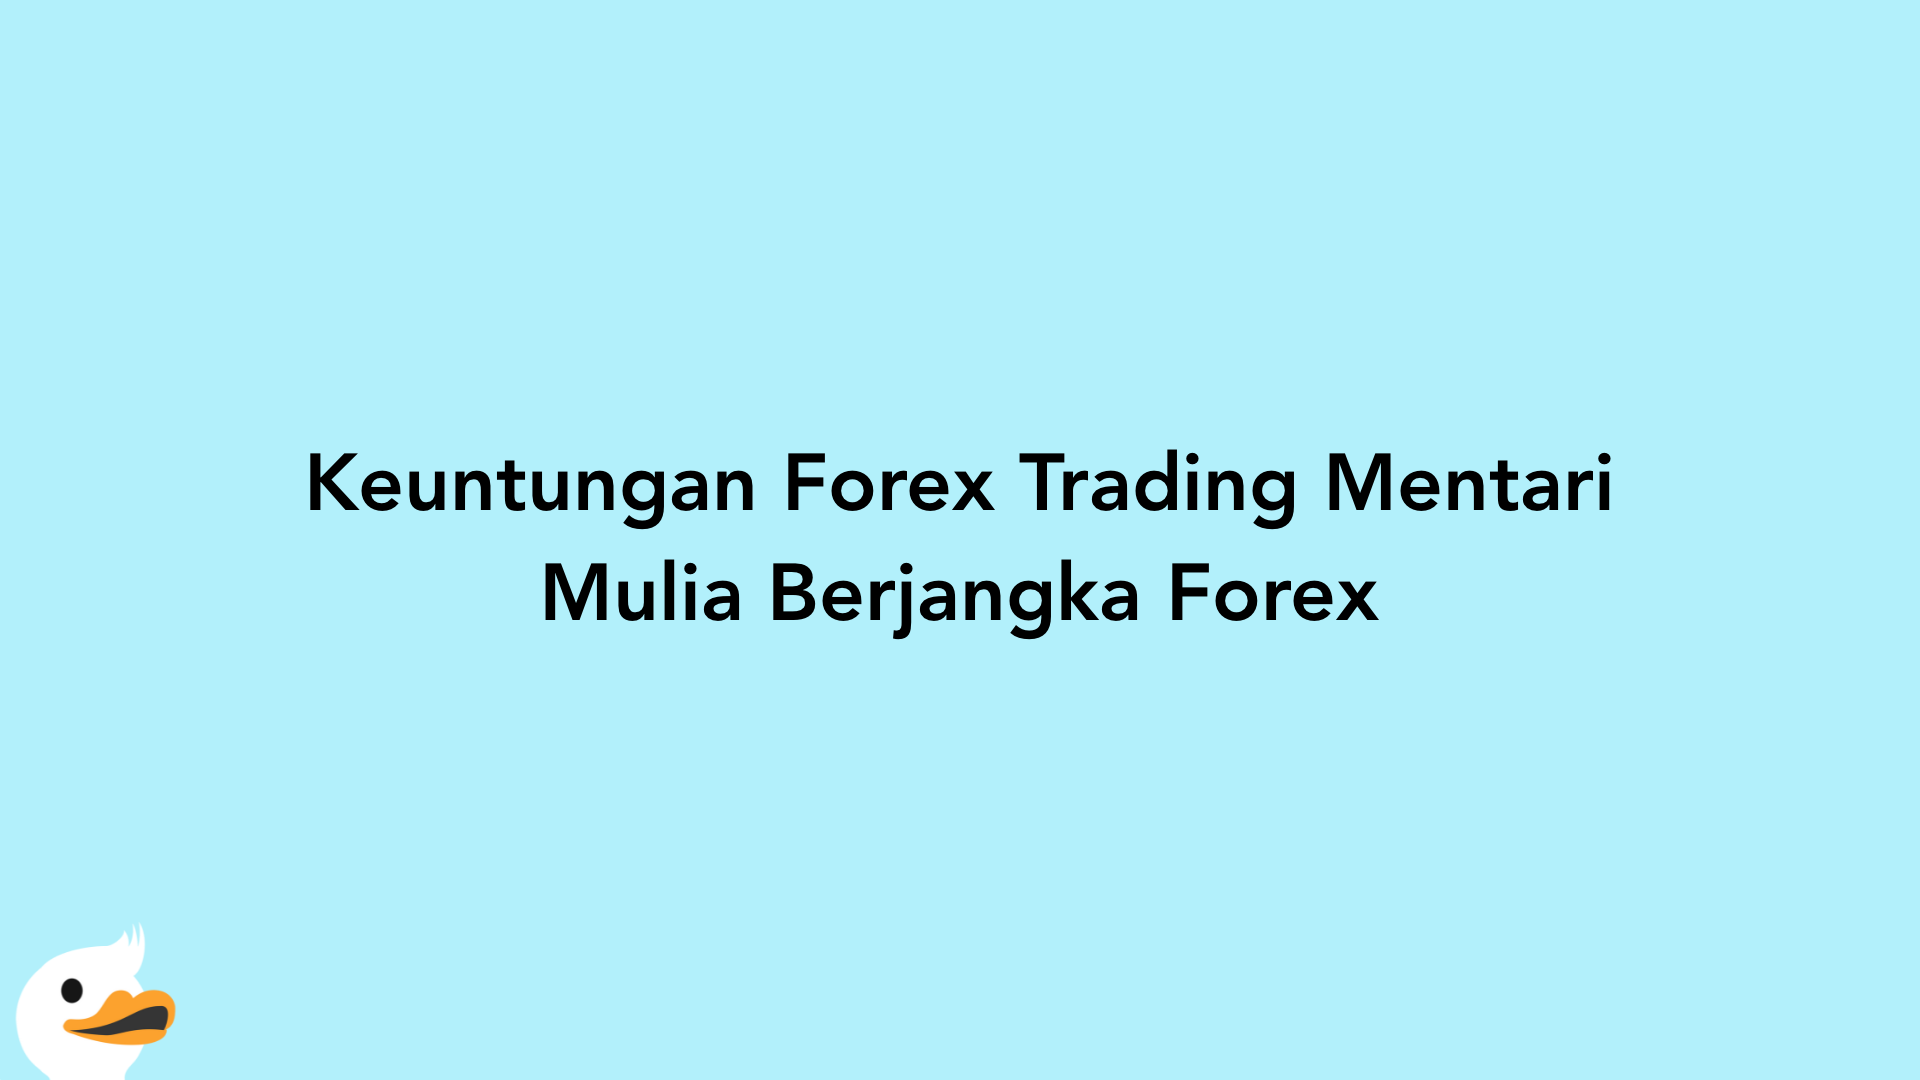 Keuntungan Forex Trading Mentari Mulia Berjangka Forex